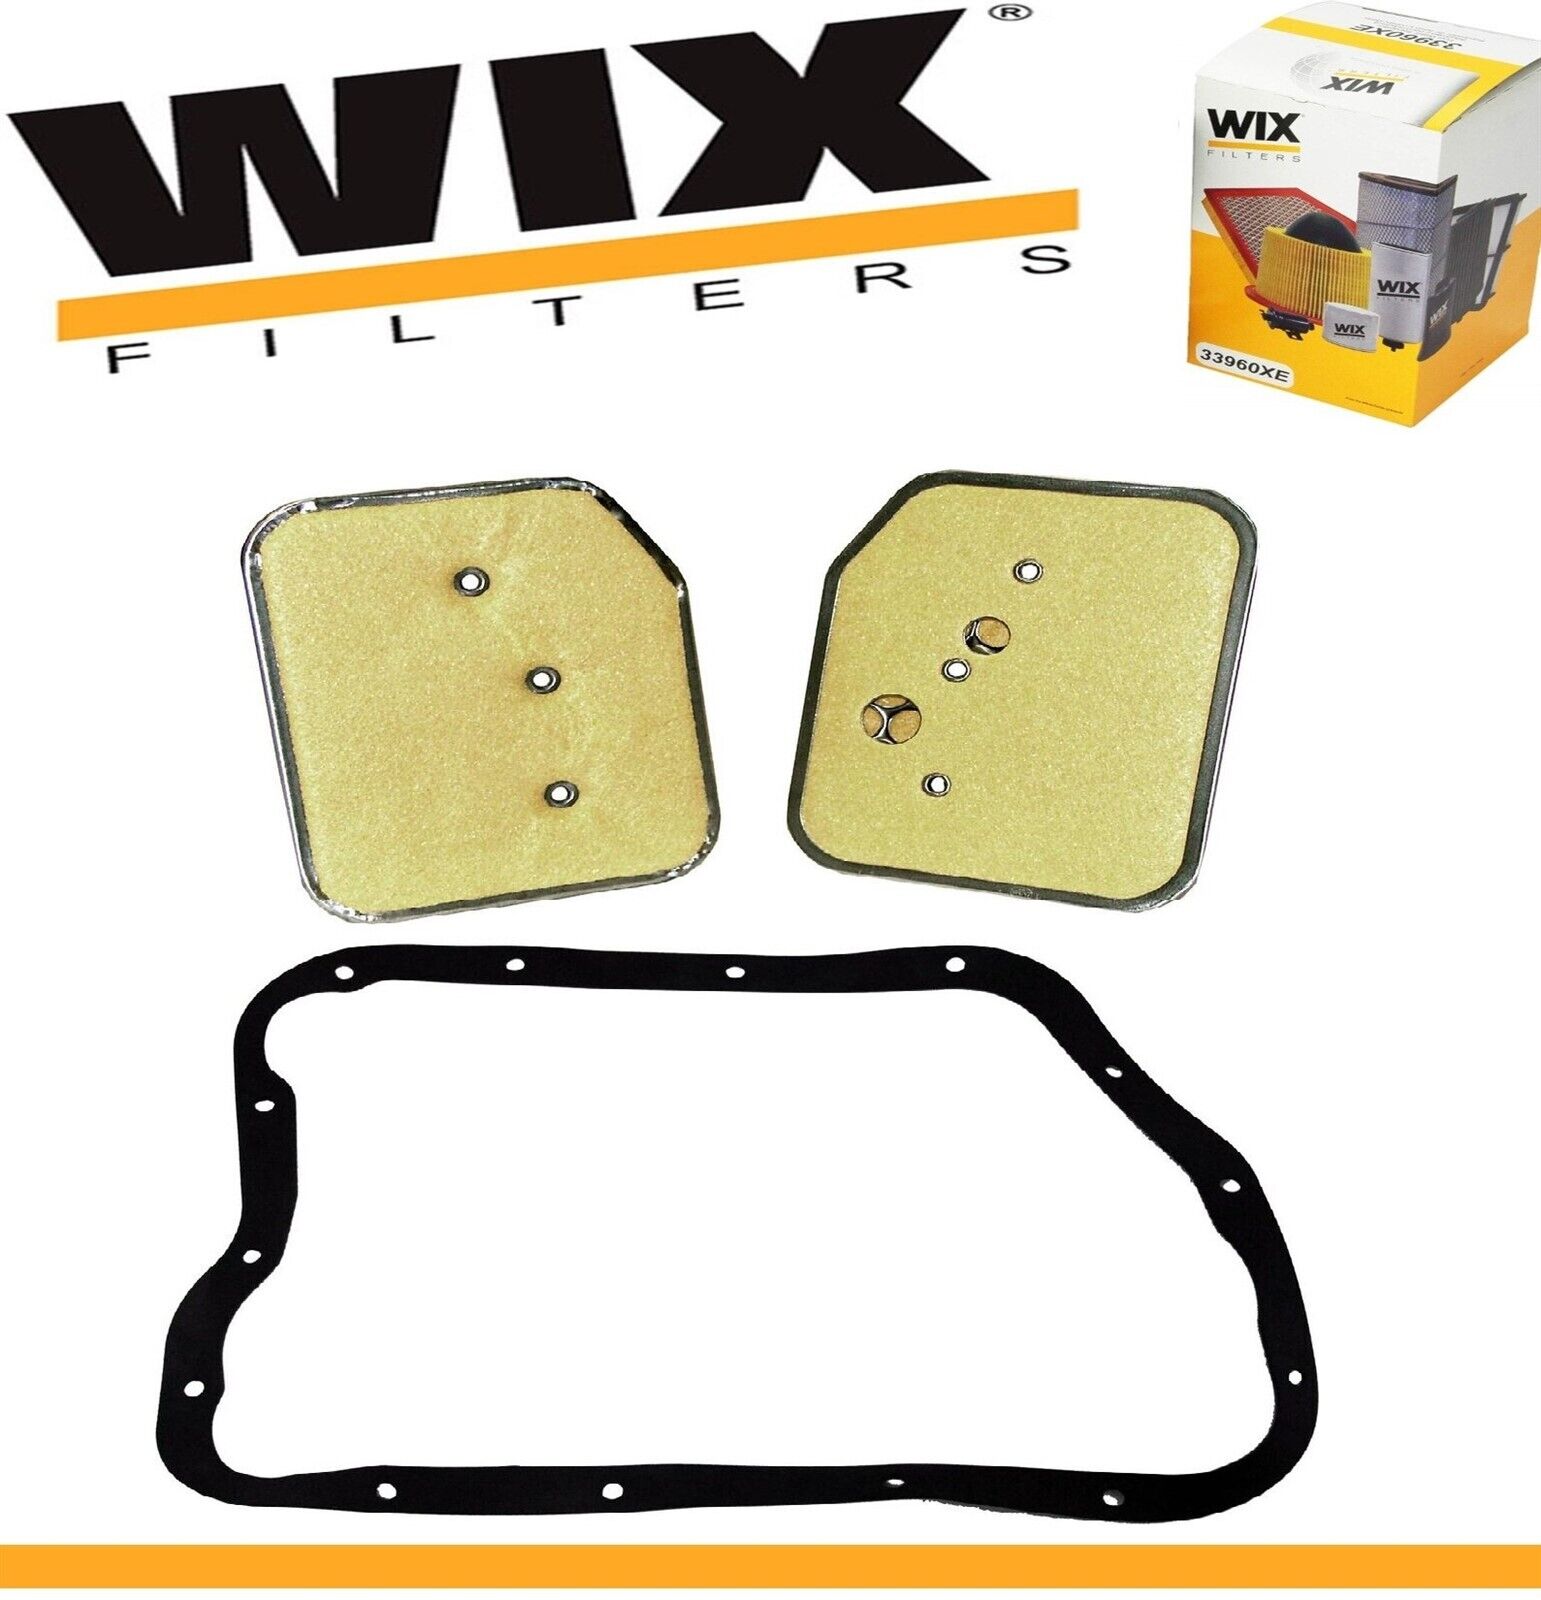 WIX Transmission Filter Kit For DODGE P300 1965